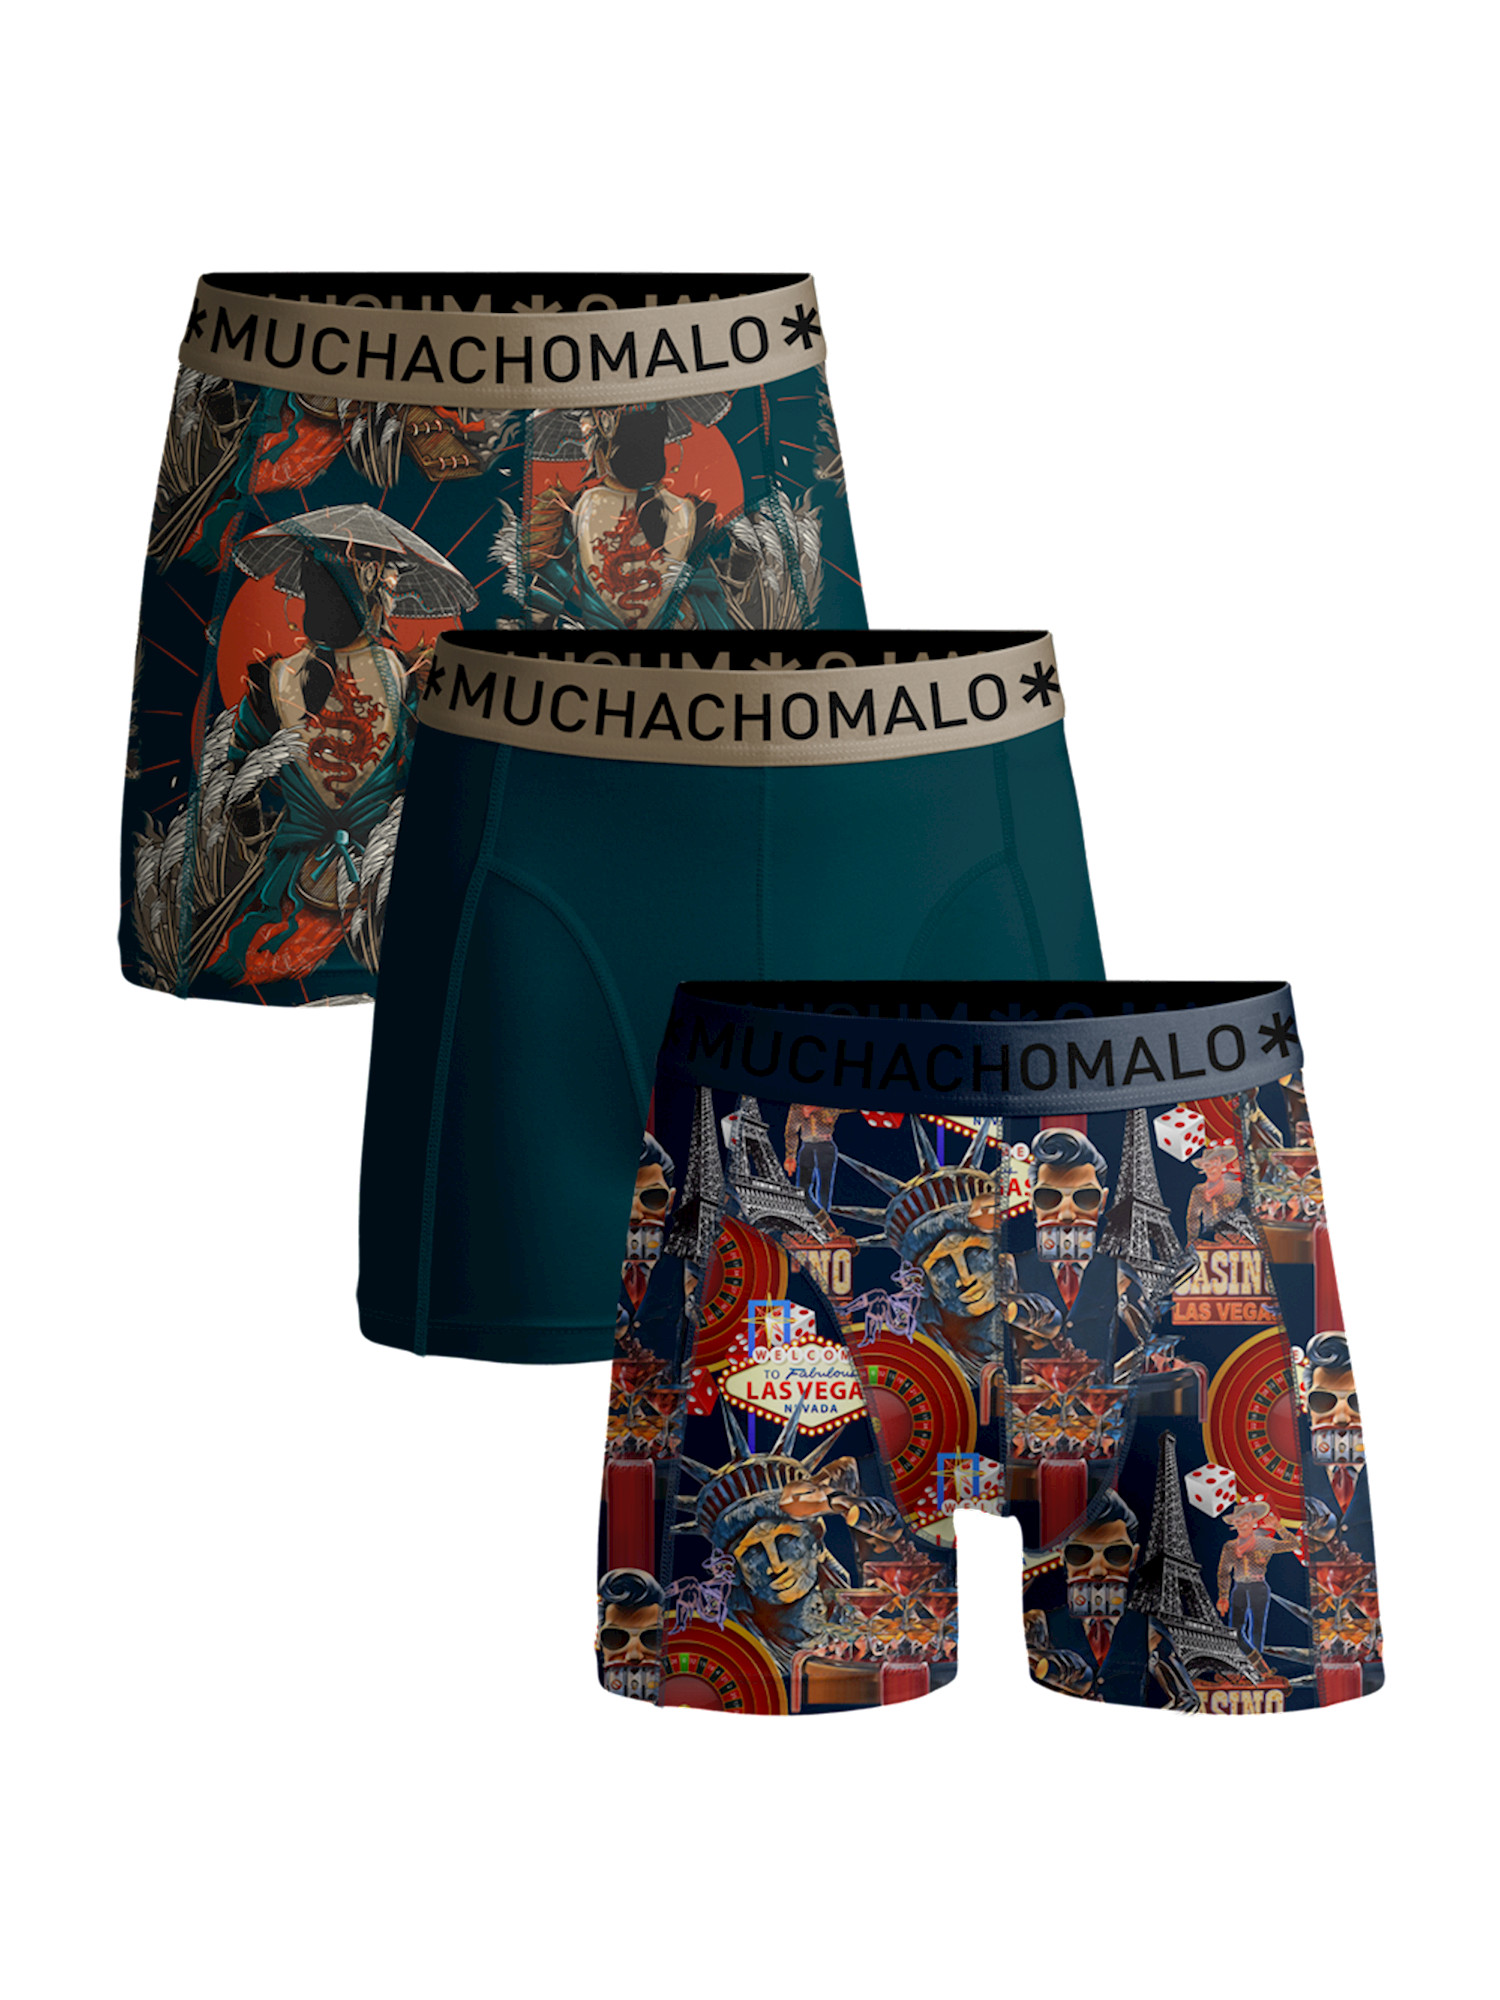 Muchachomalo Men 3-Pack Shorts Las Vegas Japan